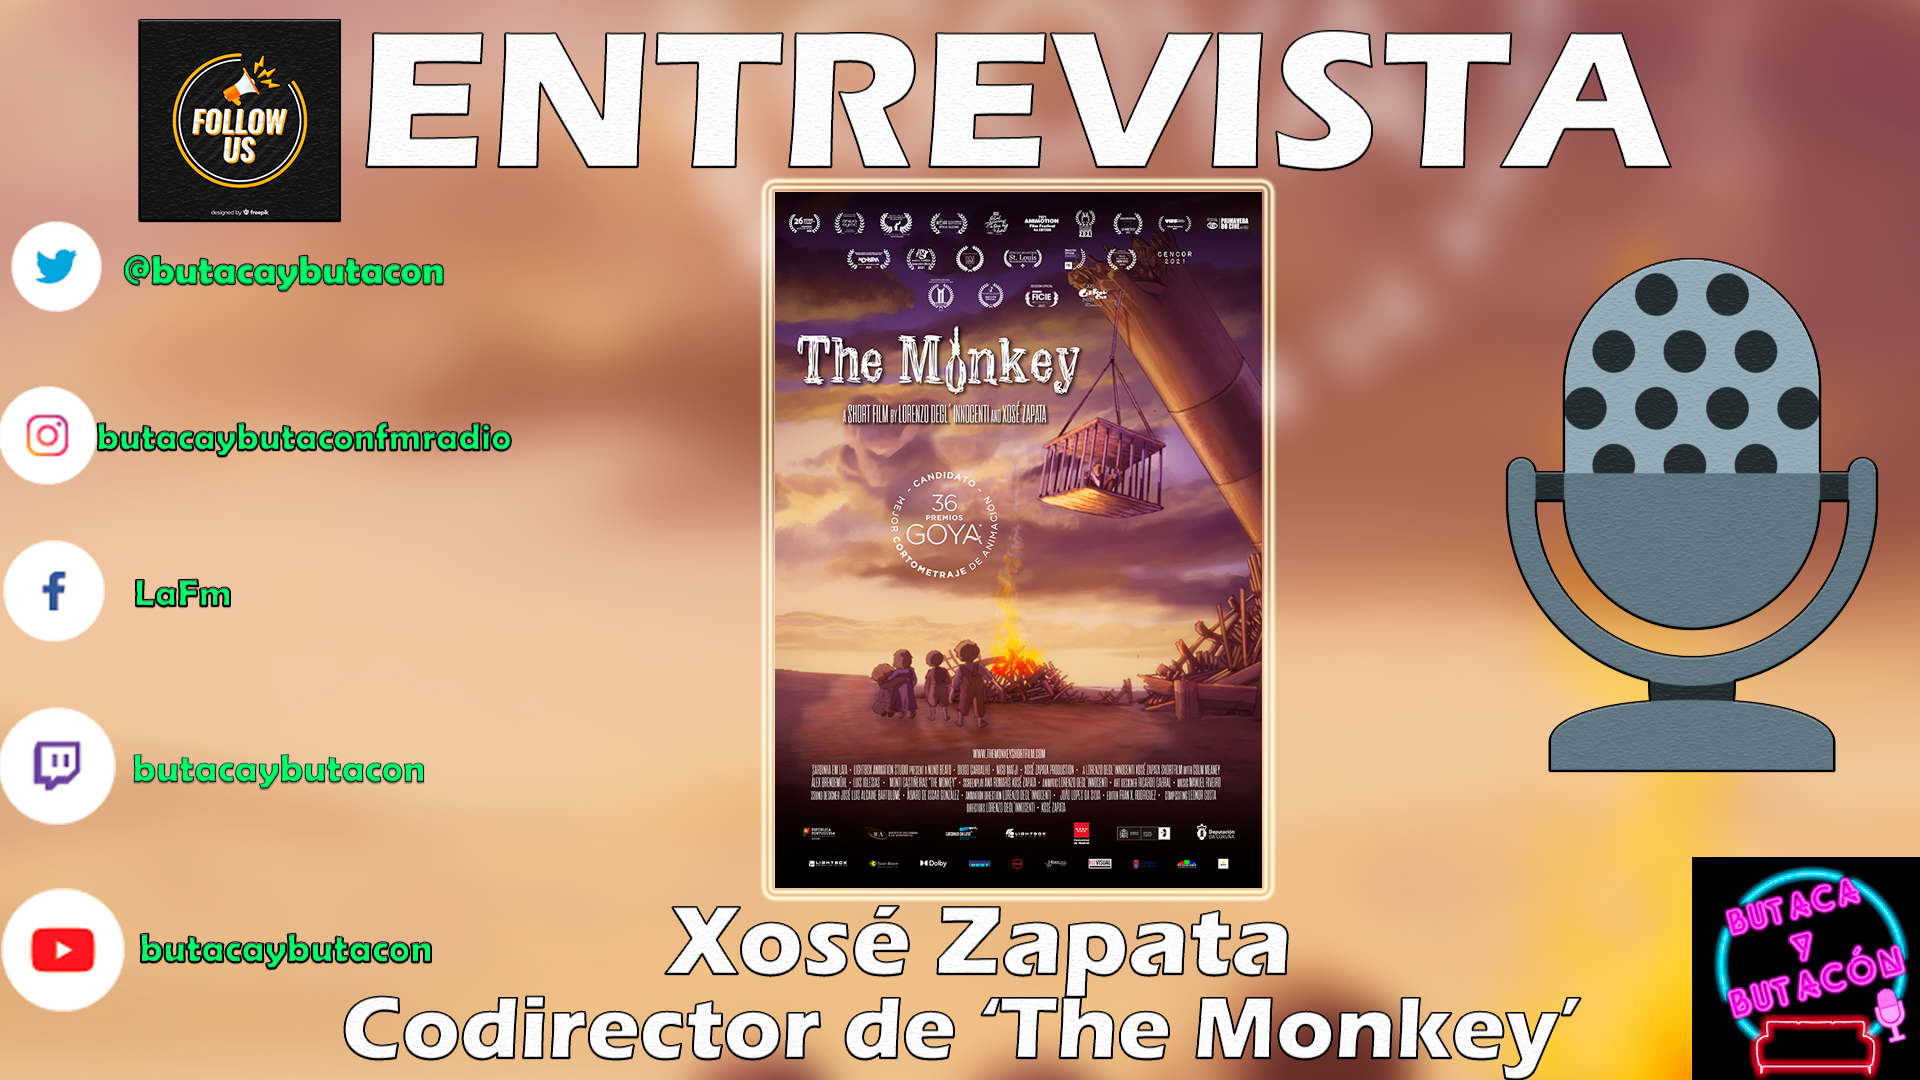 Café con Candidatos: Xosé Zapata, codirector de 'The Monkey'